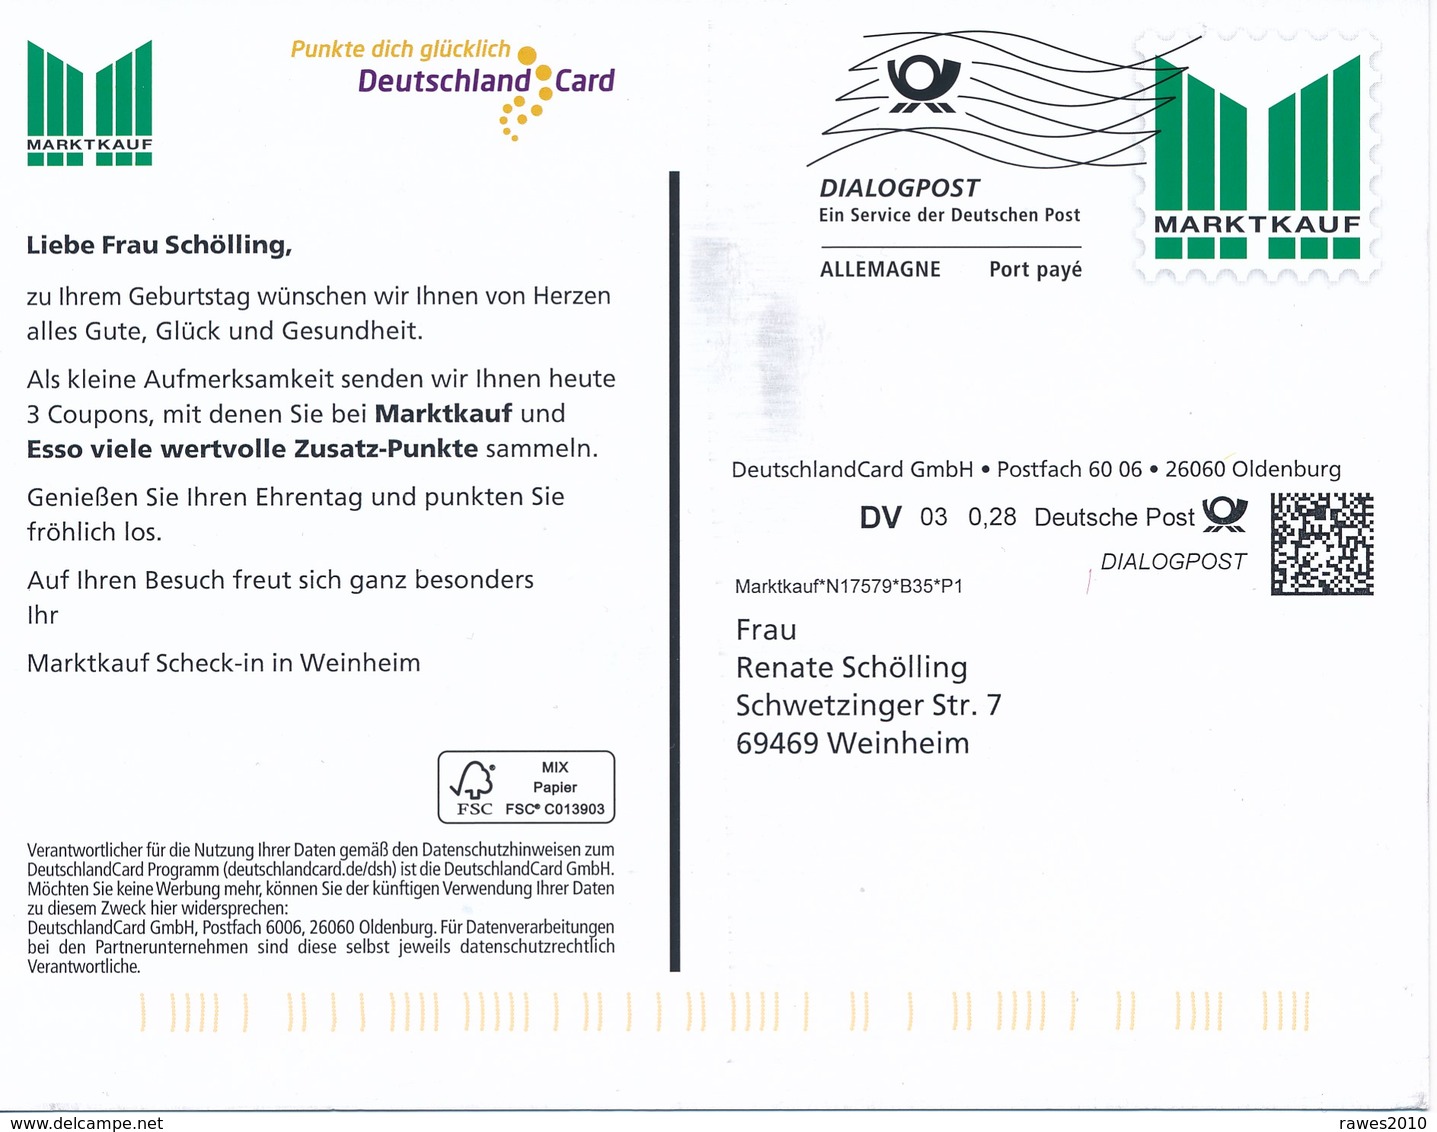 BRD Oldenburg Dialogpost Allemagne DV 03 0,28 Euro FRW 2020 Marktkauf DeutschlandCard GmbH - Storia Postale